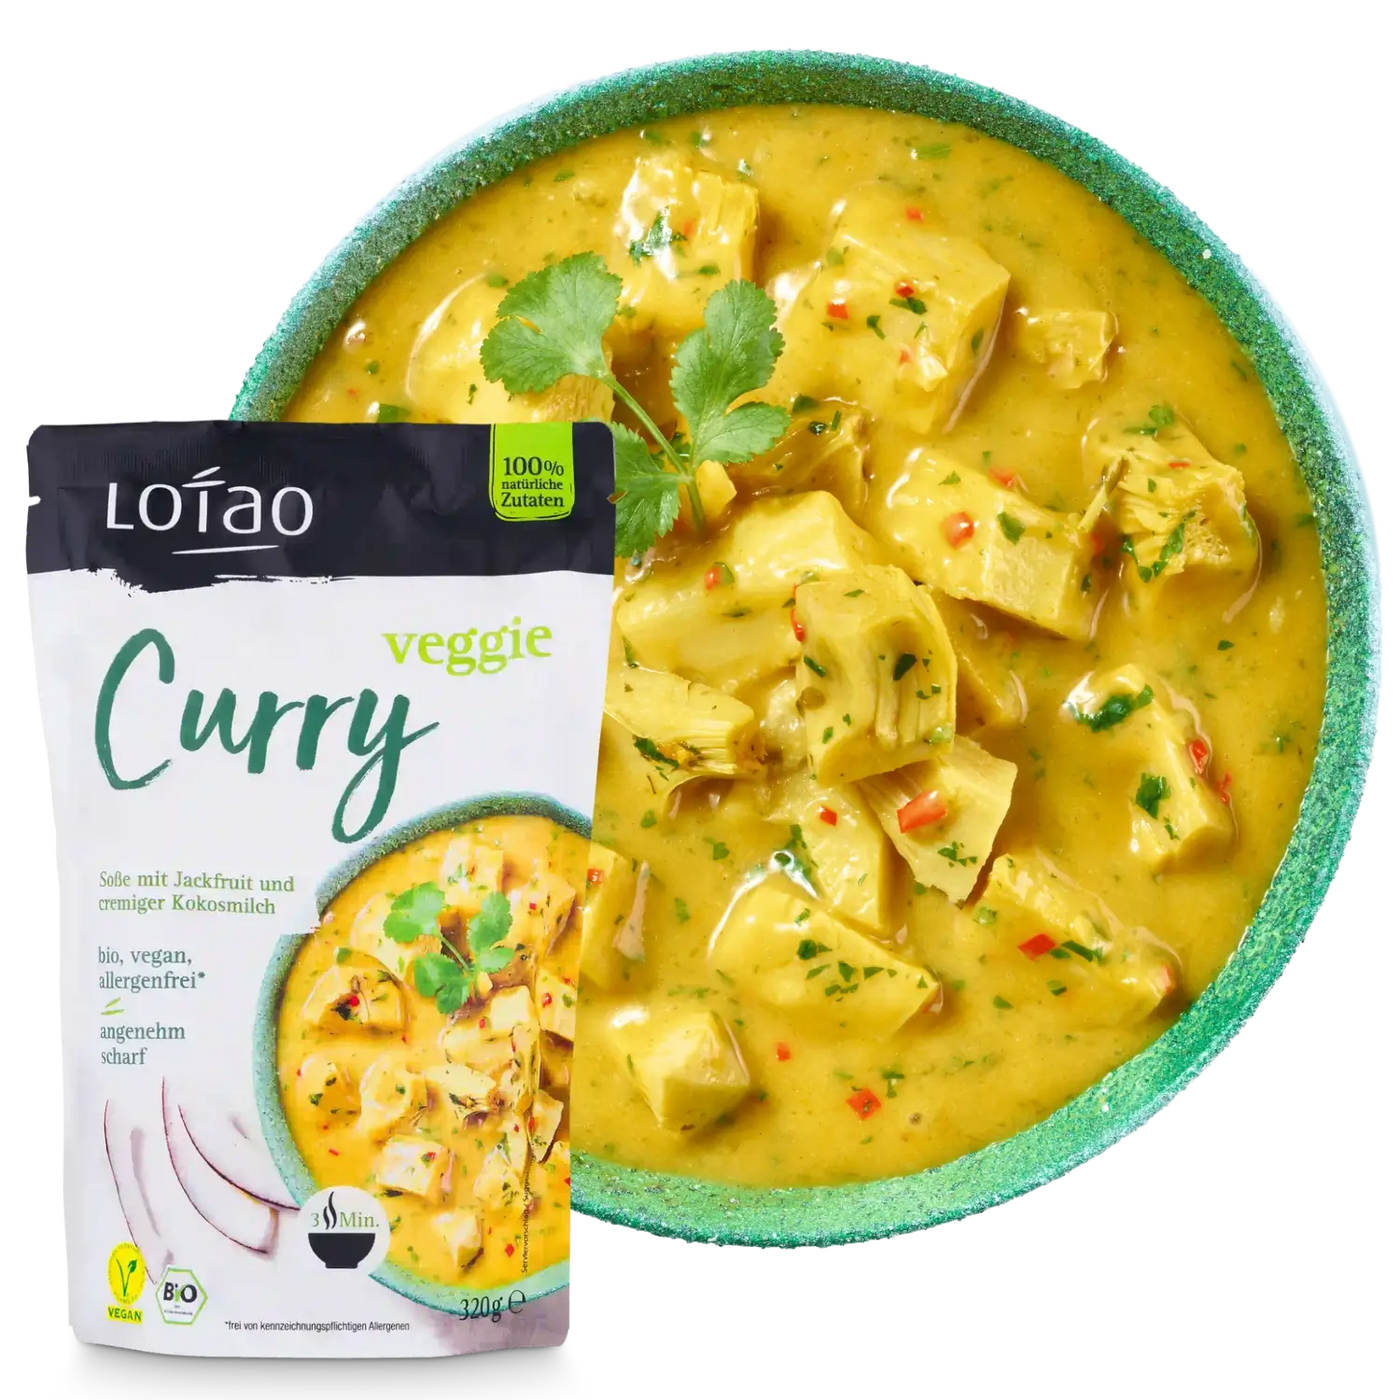 Bio-vegane Fertigsauce Veggie Curry Sosse von Lotao zubereitet auf Teller mit Packung